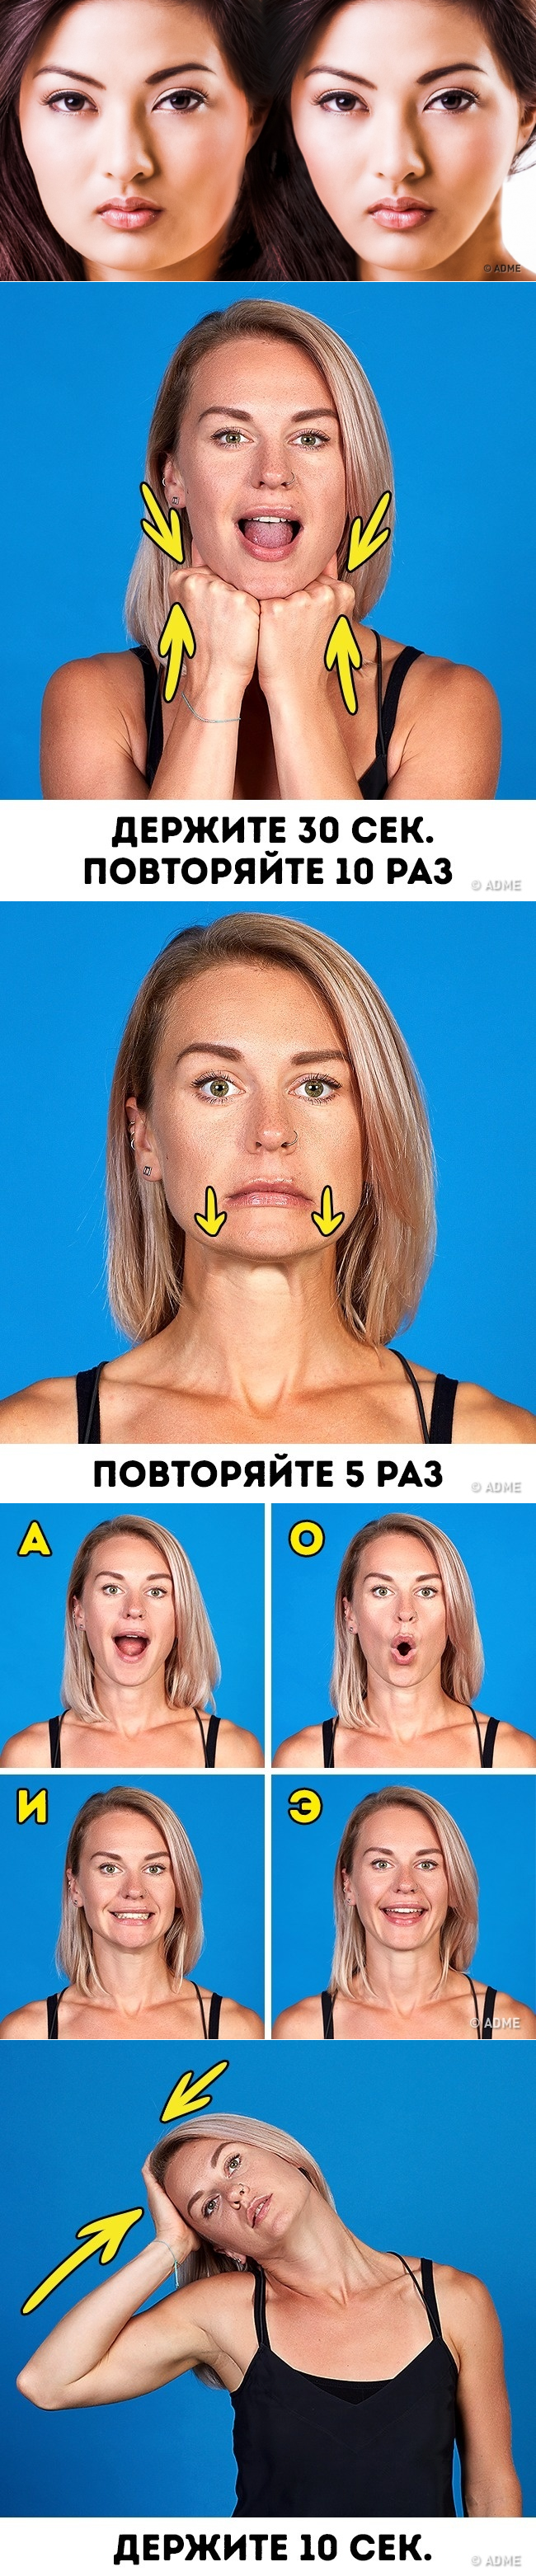 Упражнения подтяжки для овала лица и второго подбородка